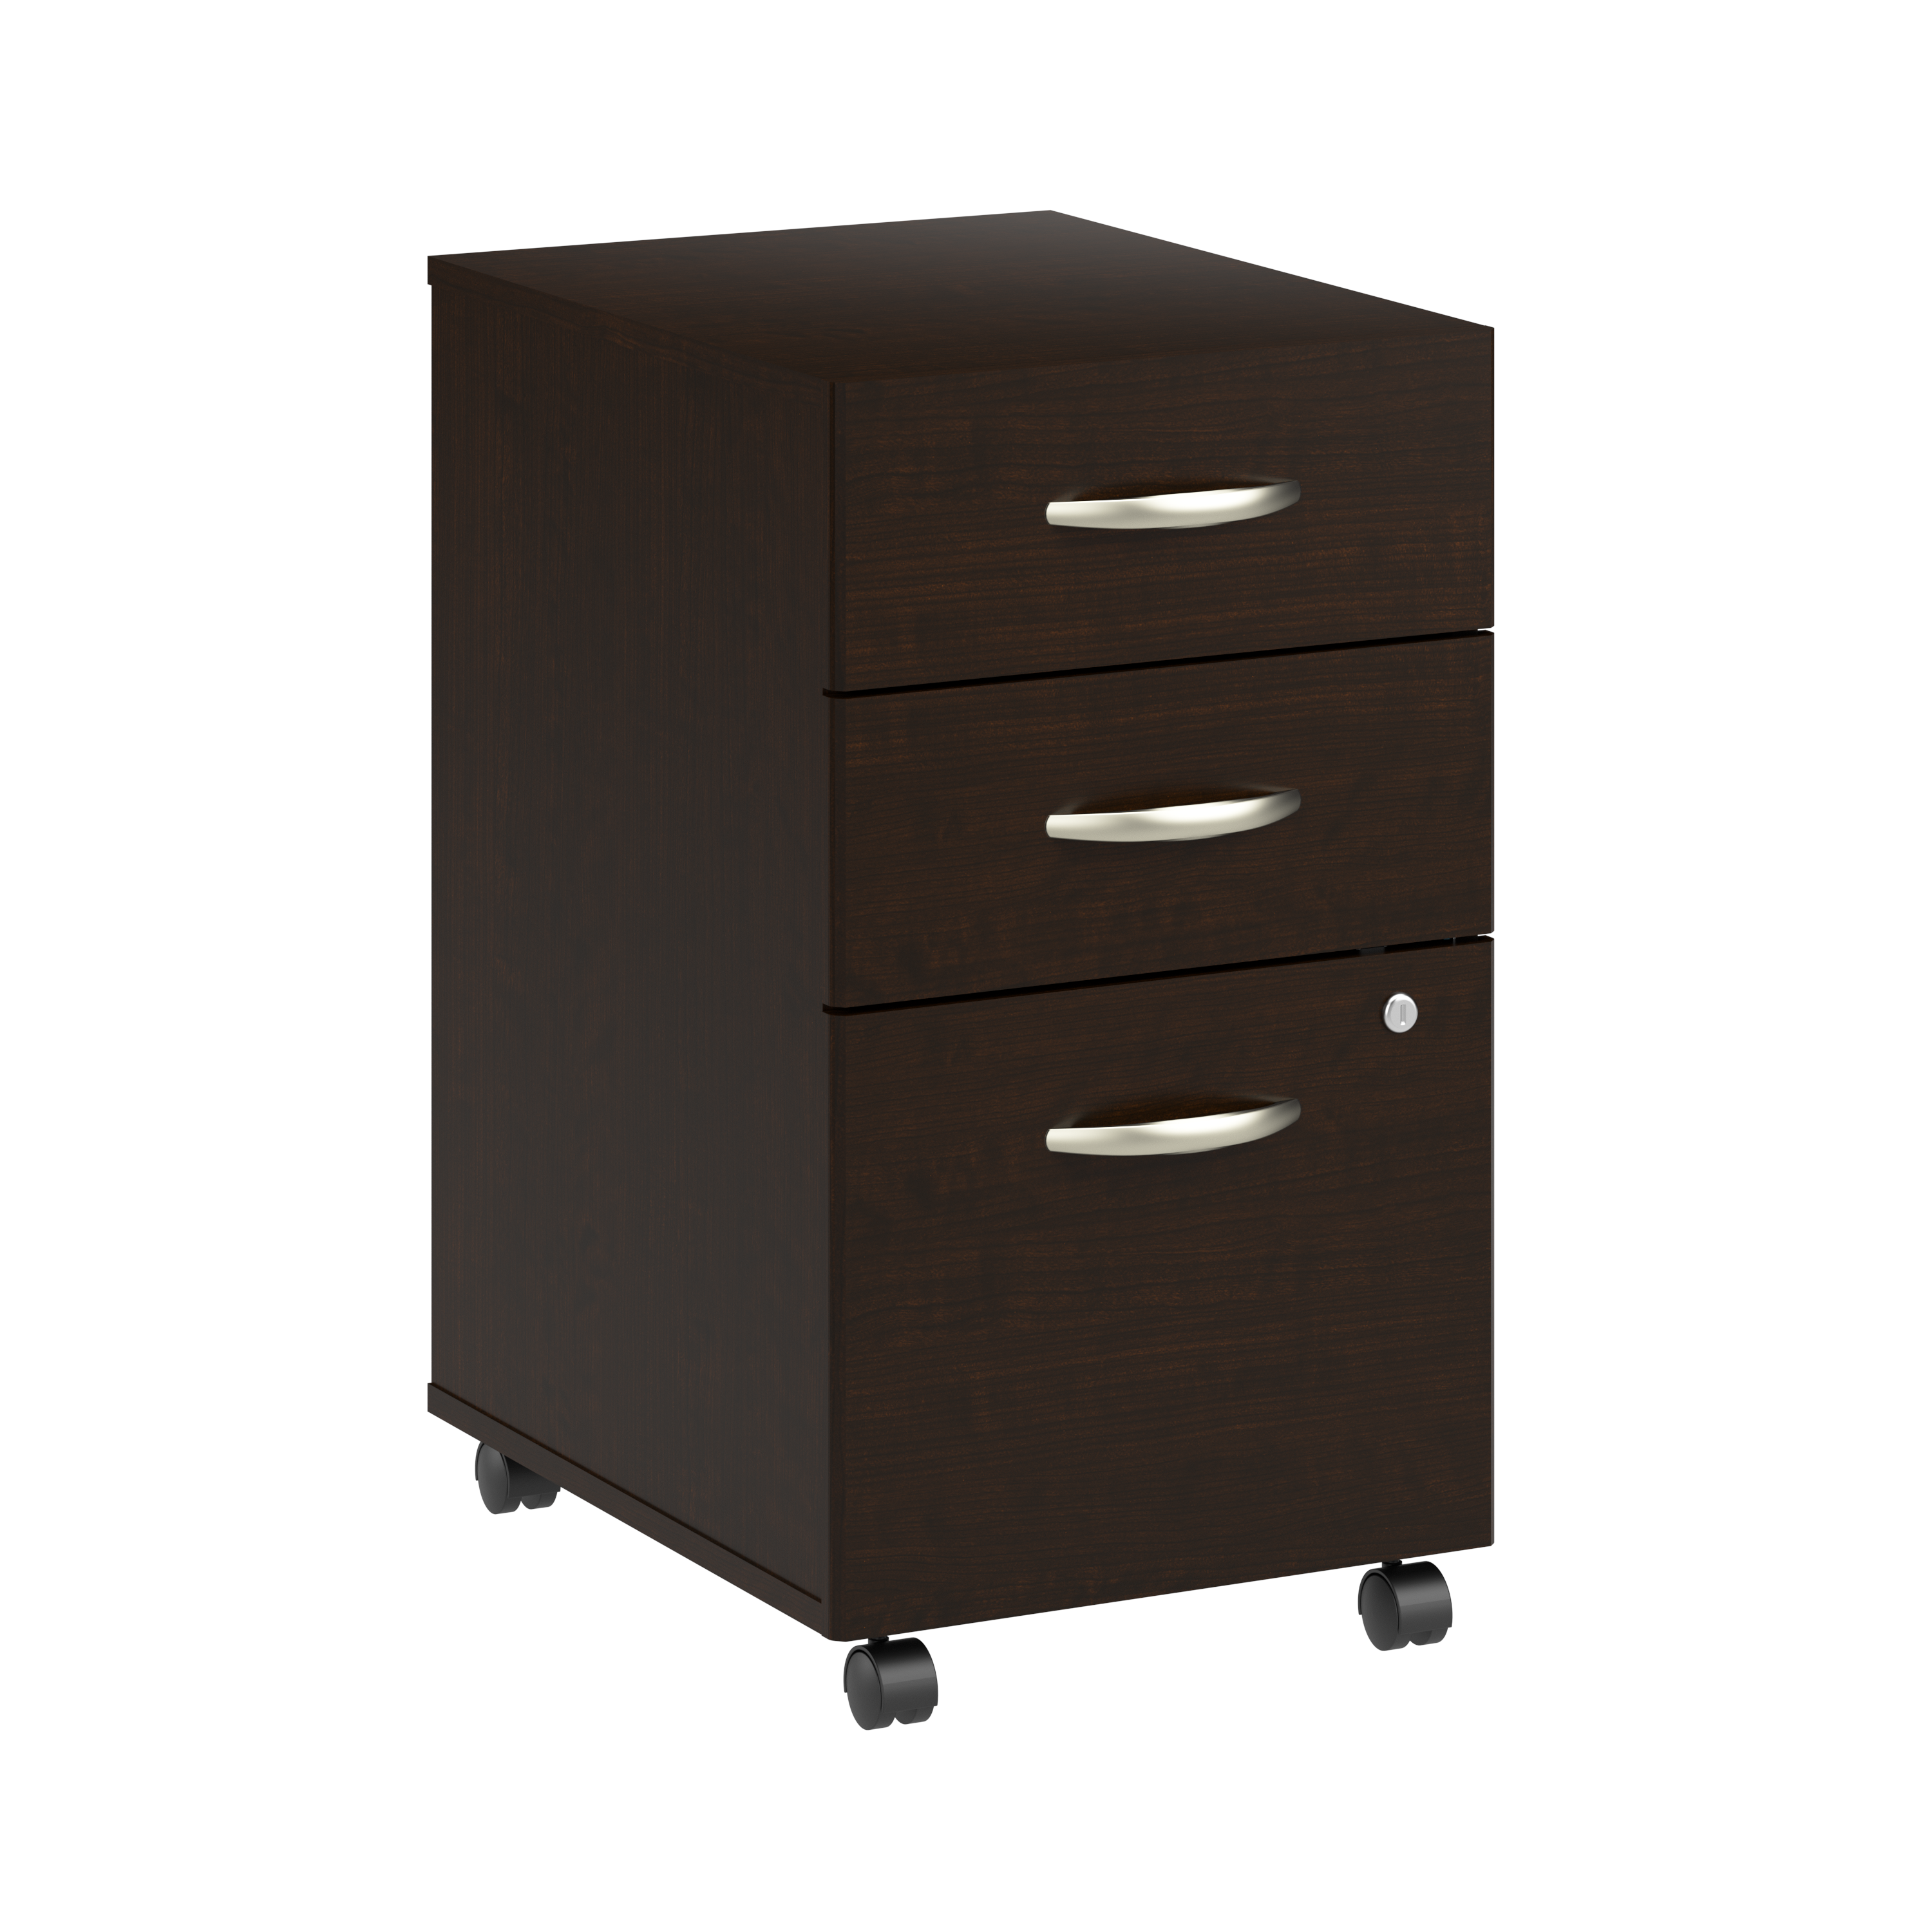 Shop Bush Business Furniture Arrive 3 Drawer Mobile File Cabinet - Assembled 02 ARF116MR-Z #color_mocha cherry